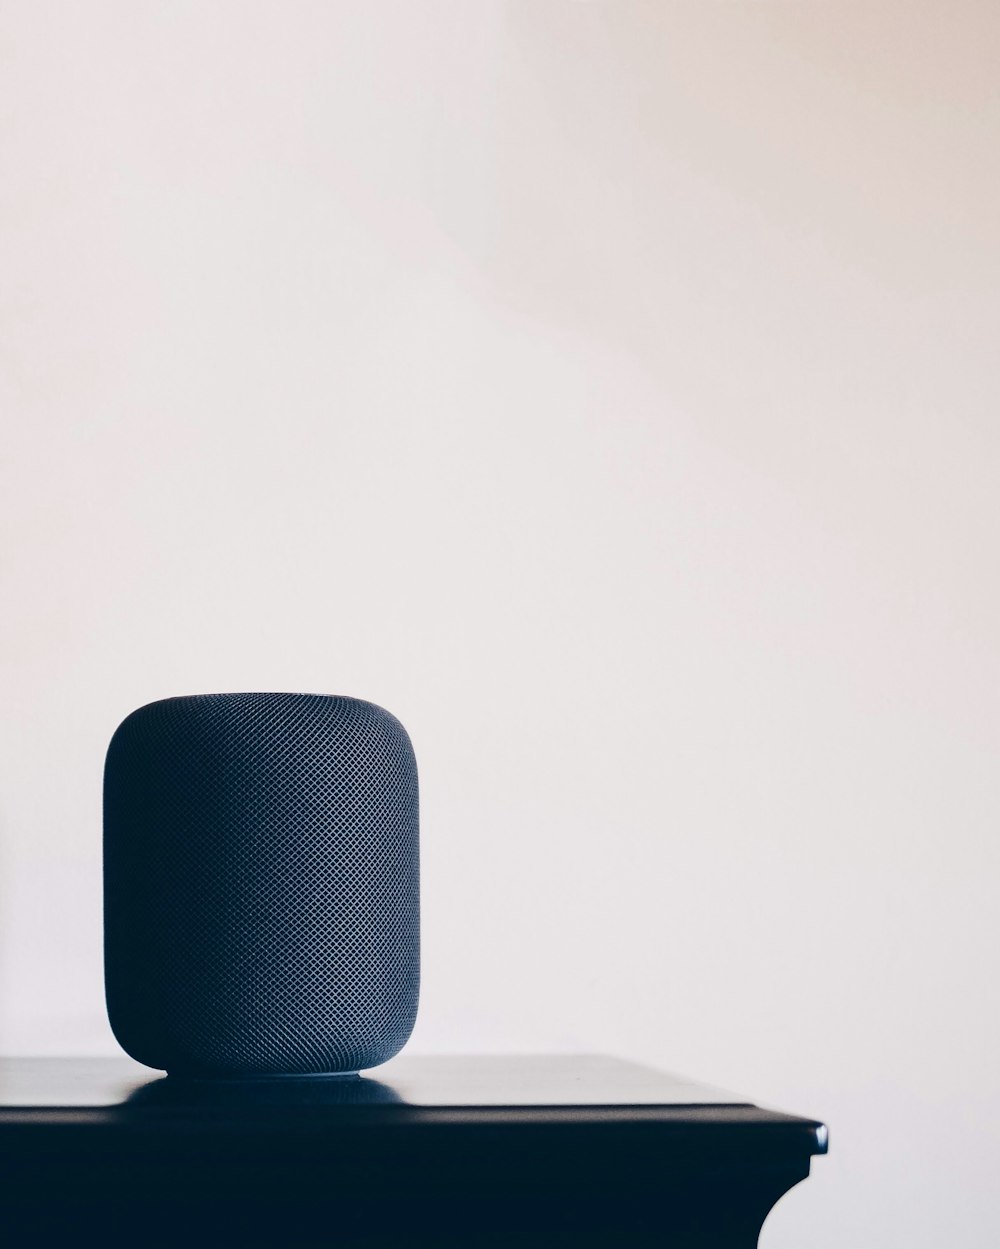 schwarzer Apple HomePod-Lautsprecher auf dem Tisch